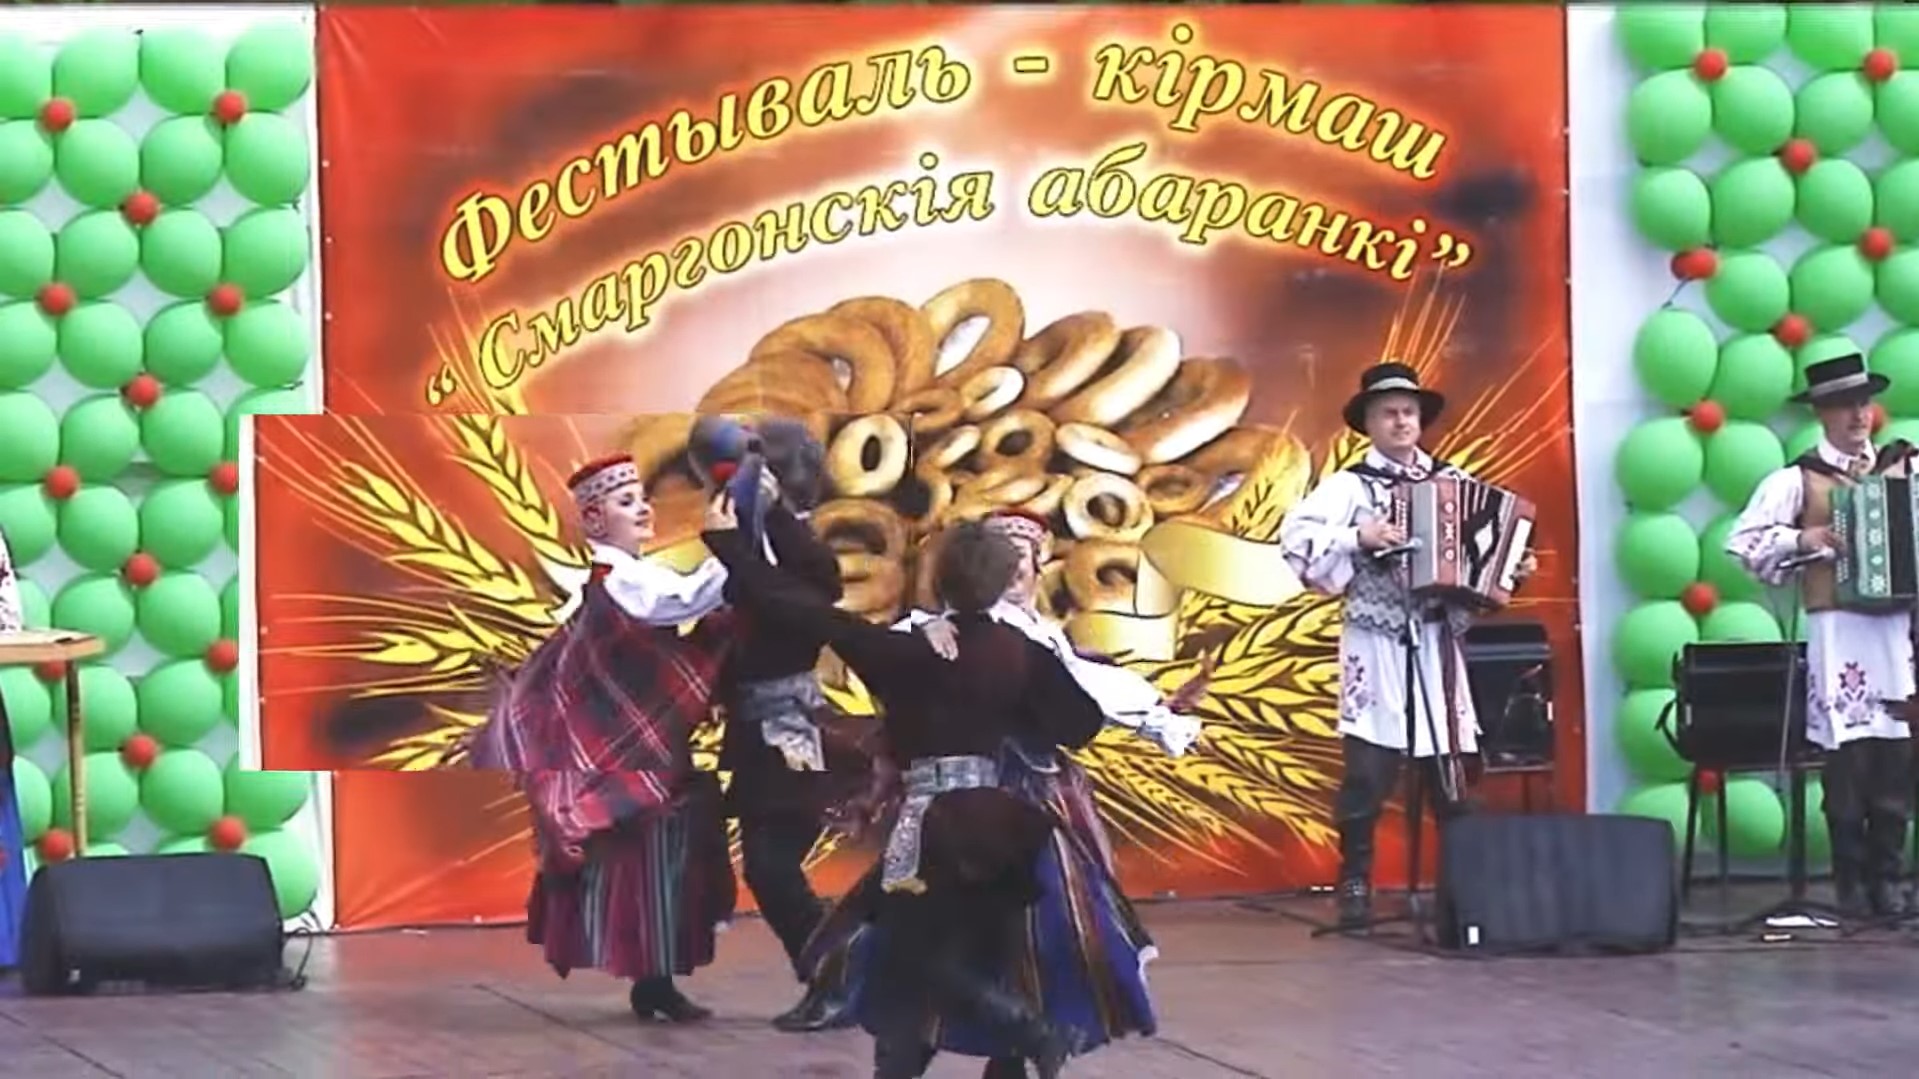 Сморгони - 520 лет!!! / Фестиваль-ярмарка "Сморгонские баранки"